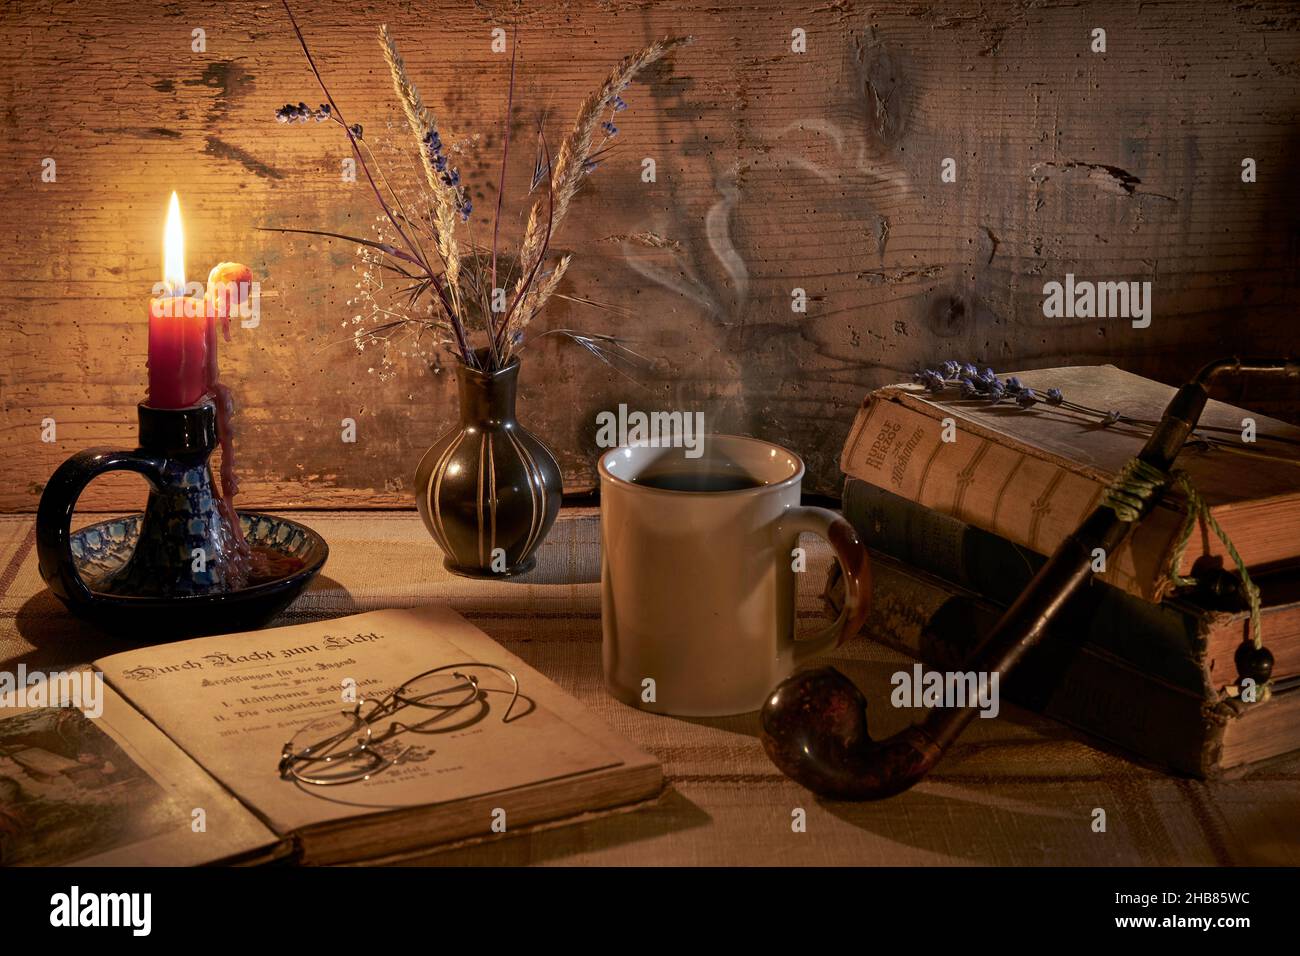 Retro Stilleben mit dampfender Kaffeetasse, Büchern, Tabakpfeife, alte brille, Kerzenhalter mit tropfender Kerze, Vase mit Gräsern und Lavendel Foto de stock